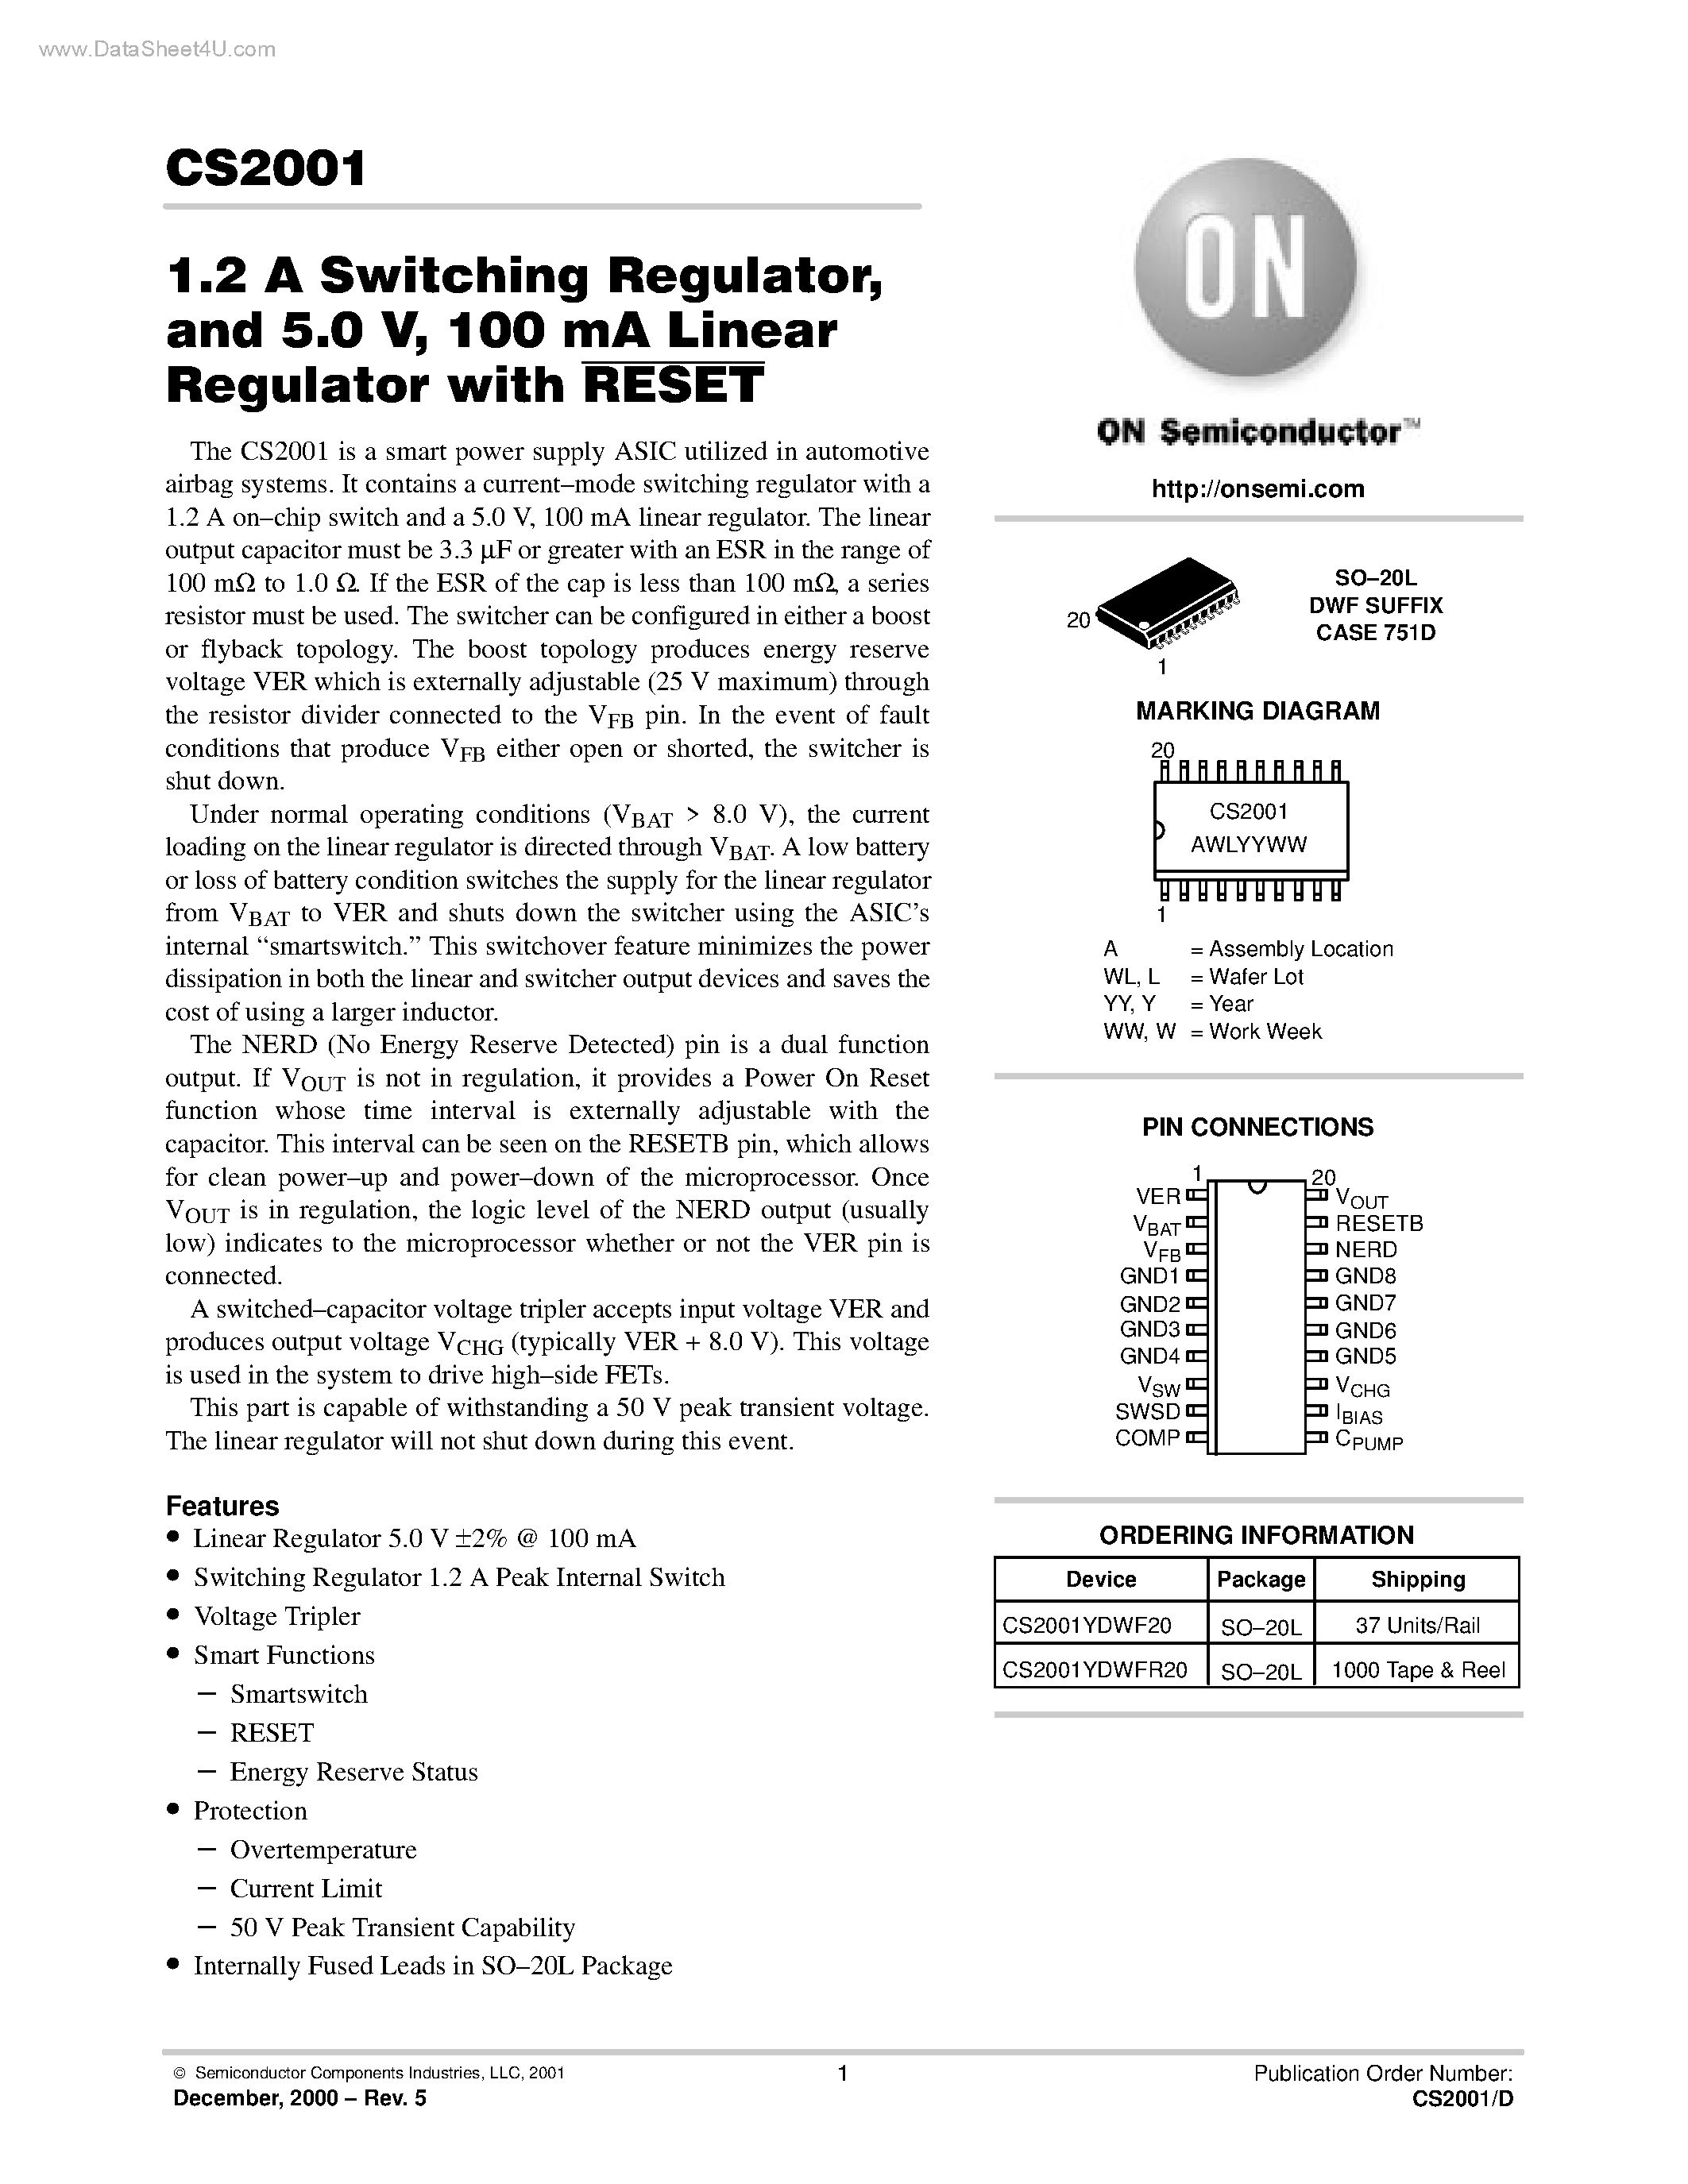 Даташит CS2001 - 100 mA Linear Regulator страница 1